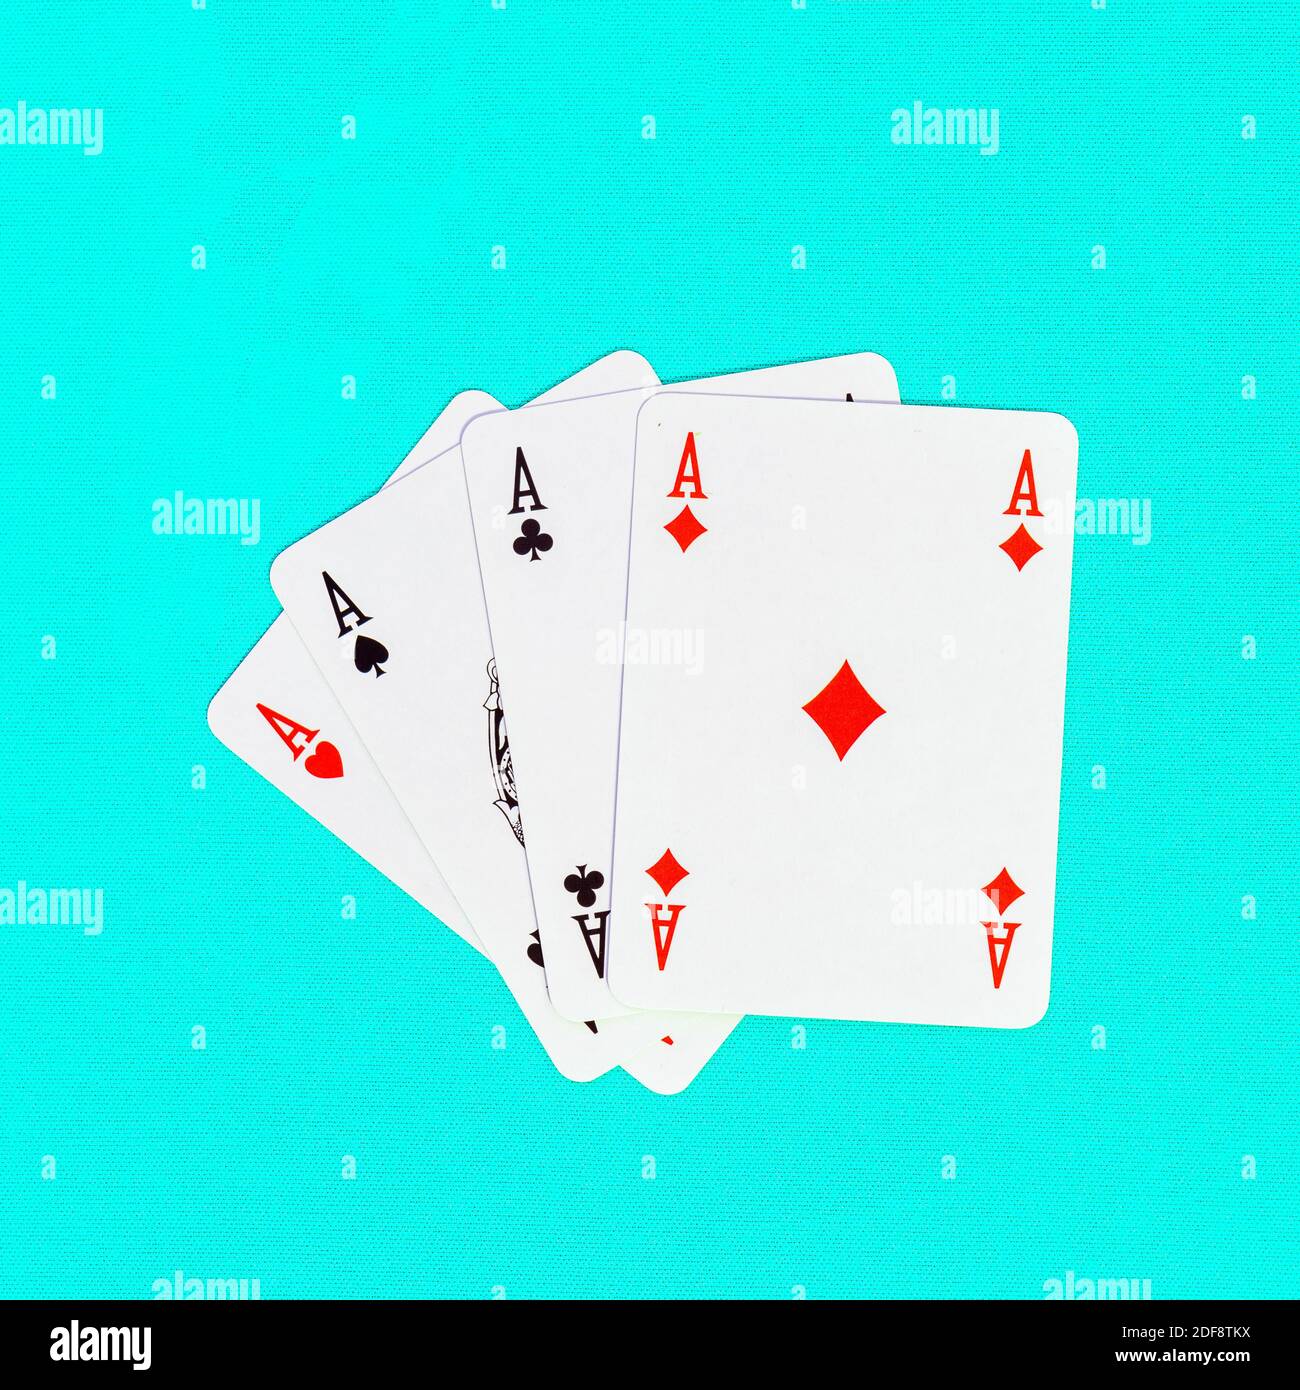 Quattro carte da gioco che raffigurano assi, mazze, picche, diamanti, cuori su uno sfondo colorato Foto Stock